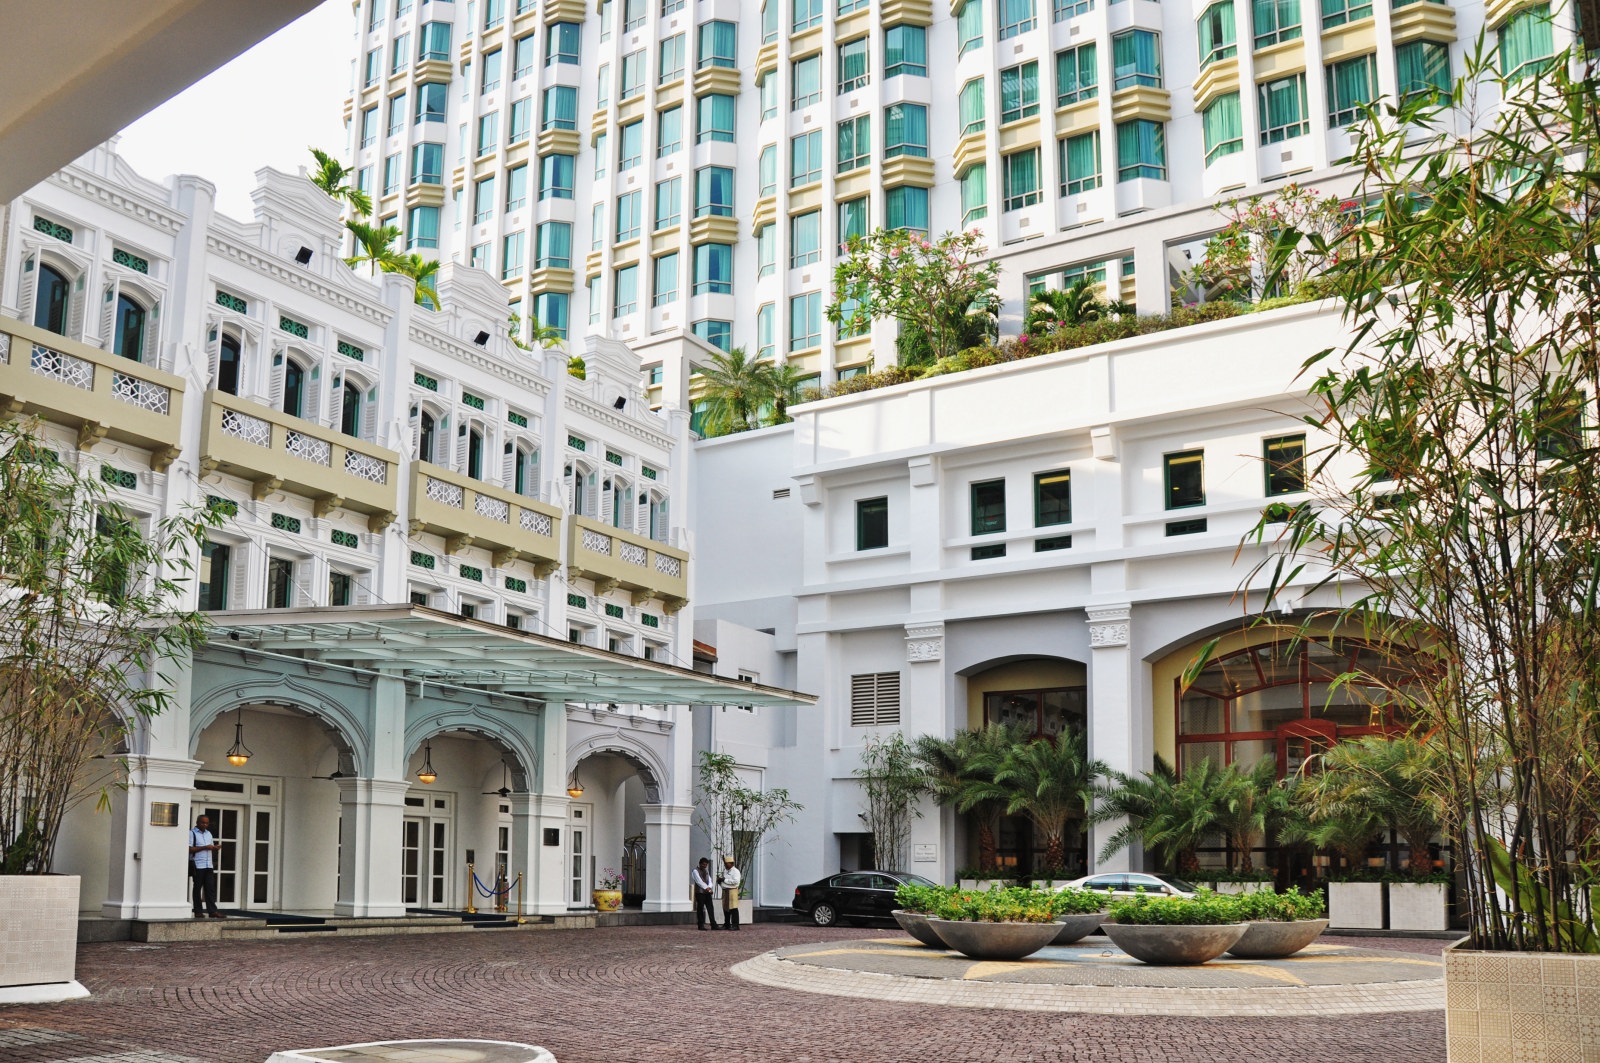 LLuxury Hotels and Travel Singaporel